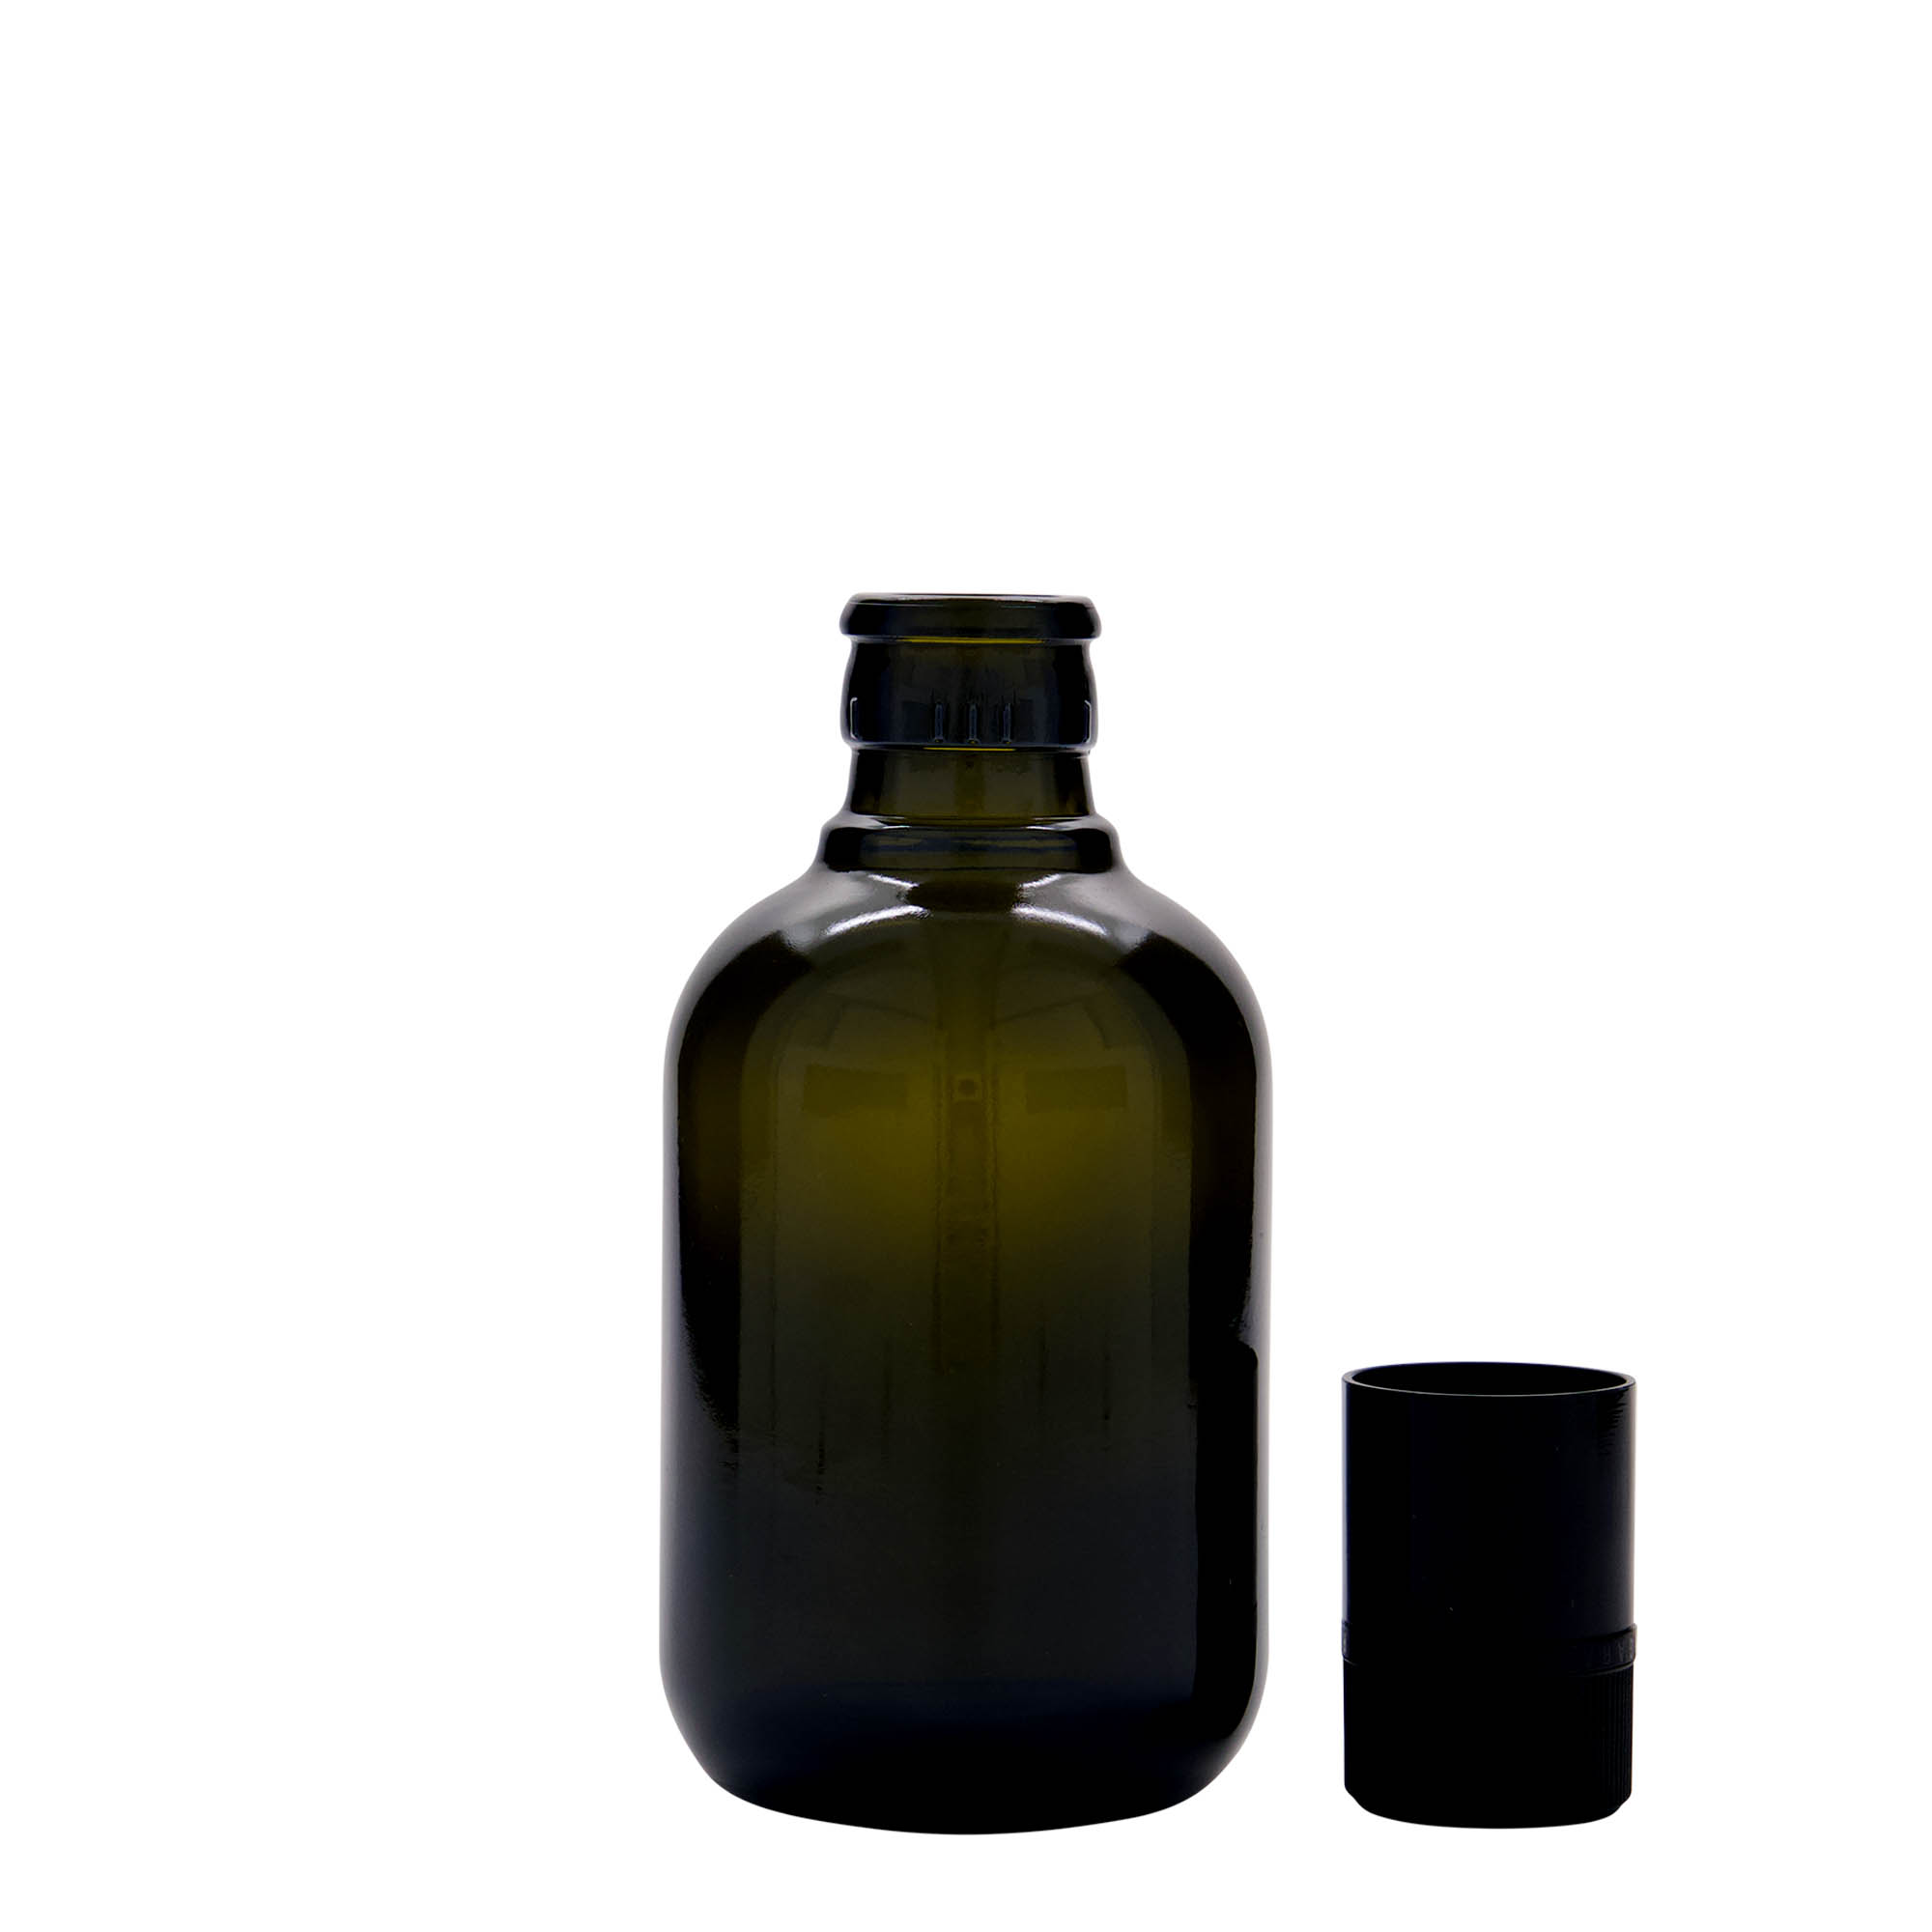 Azijn-/oliefles 'Biolio', 250 ml, glas, antiekgroen, monding: DOP